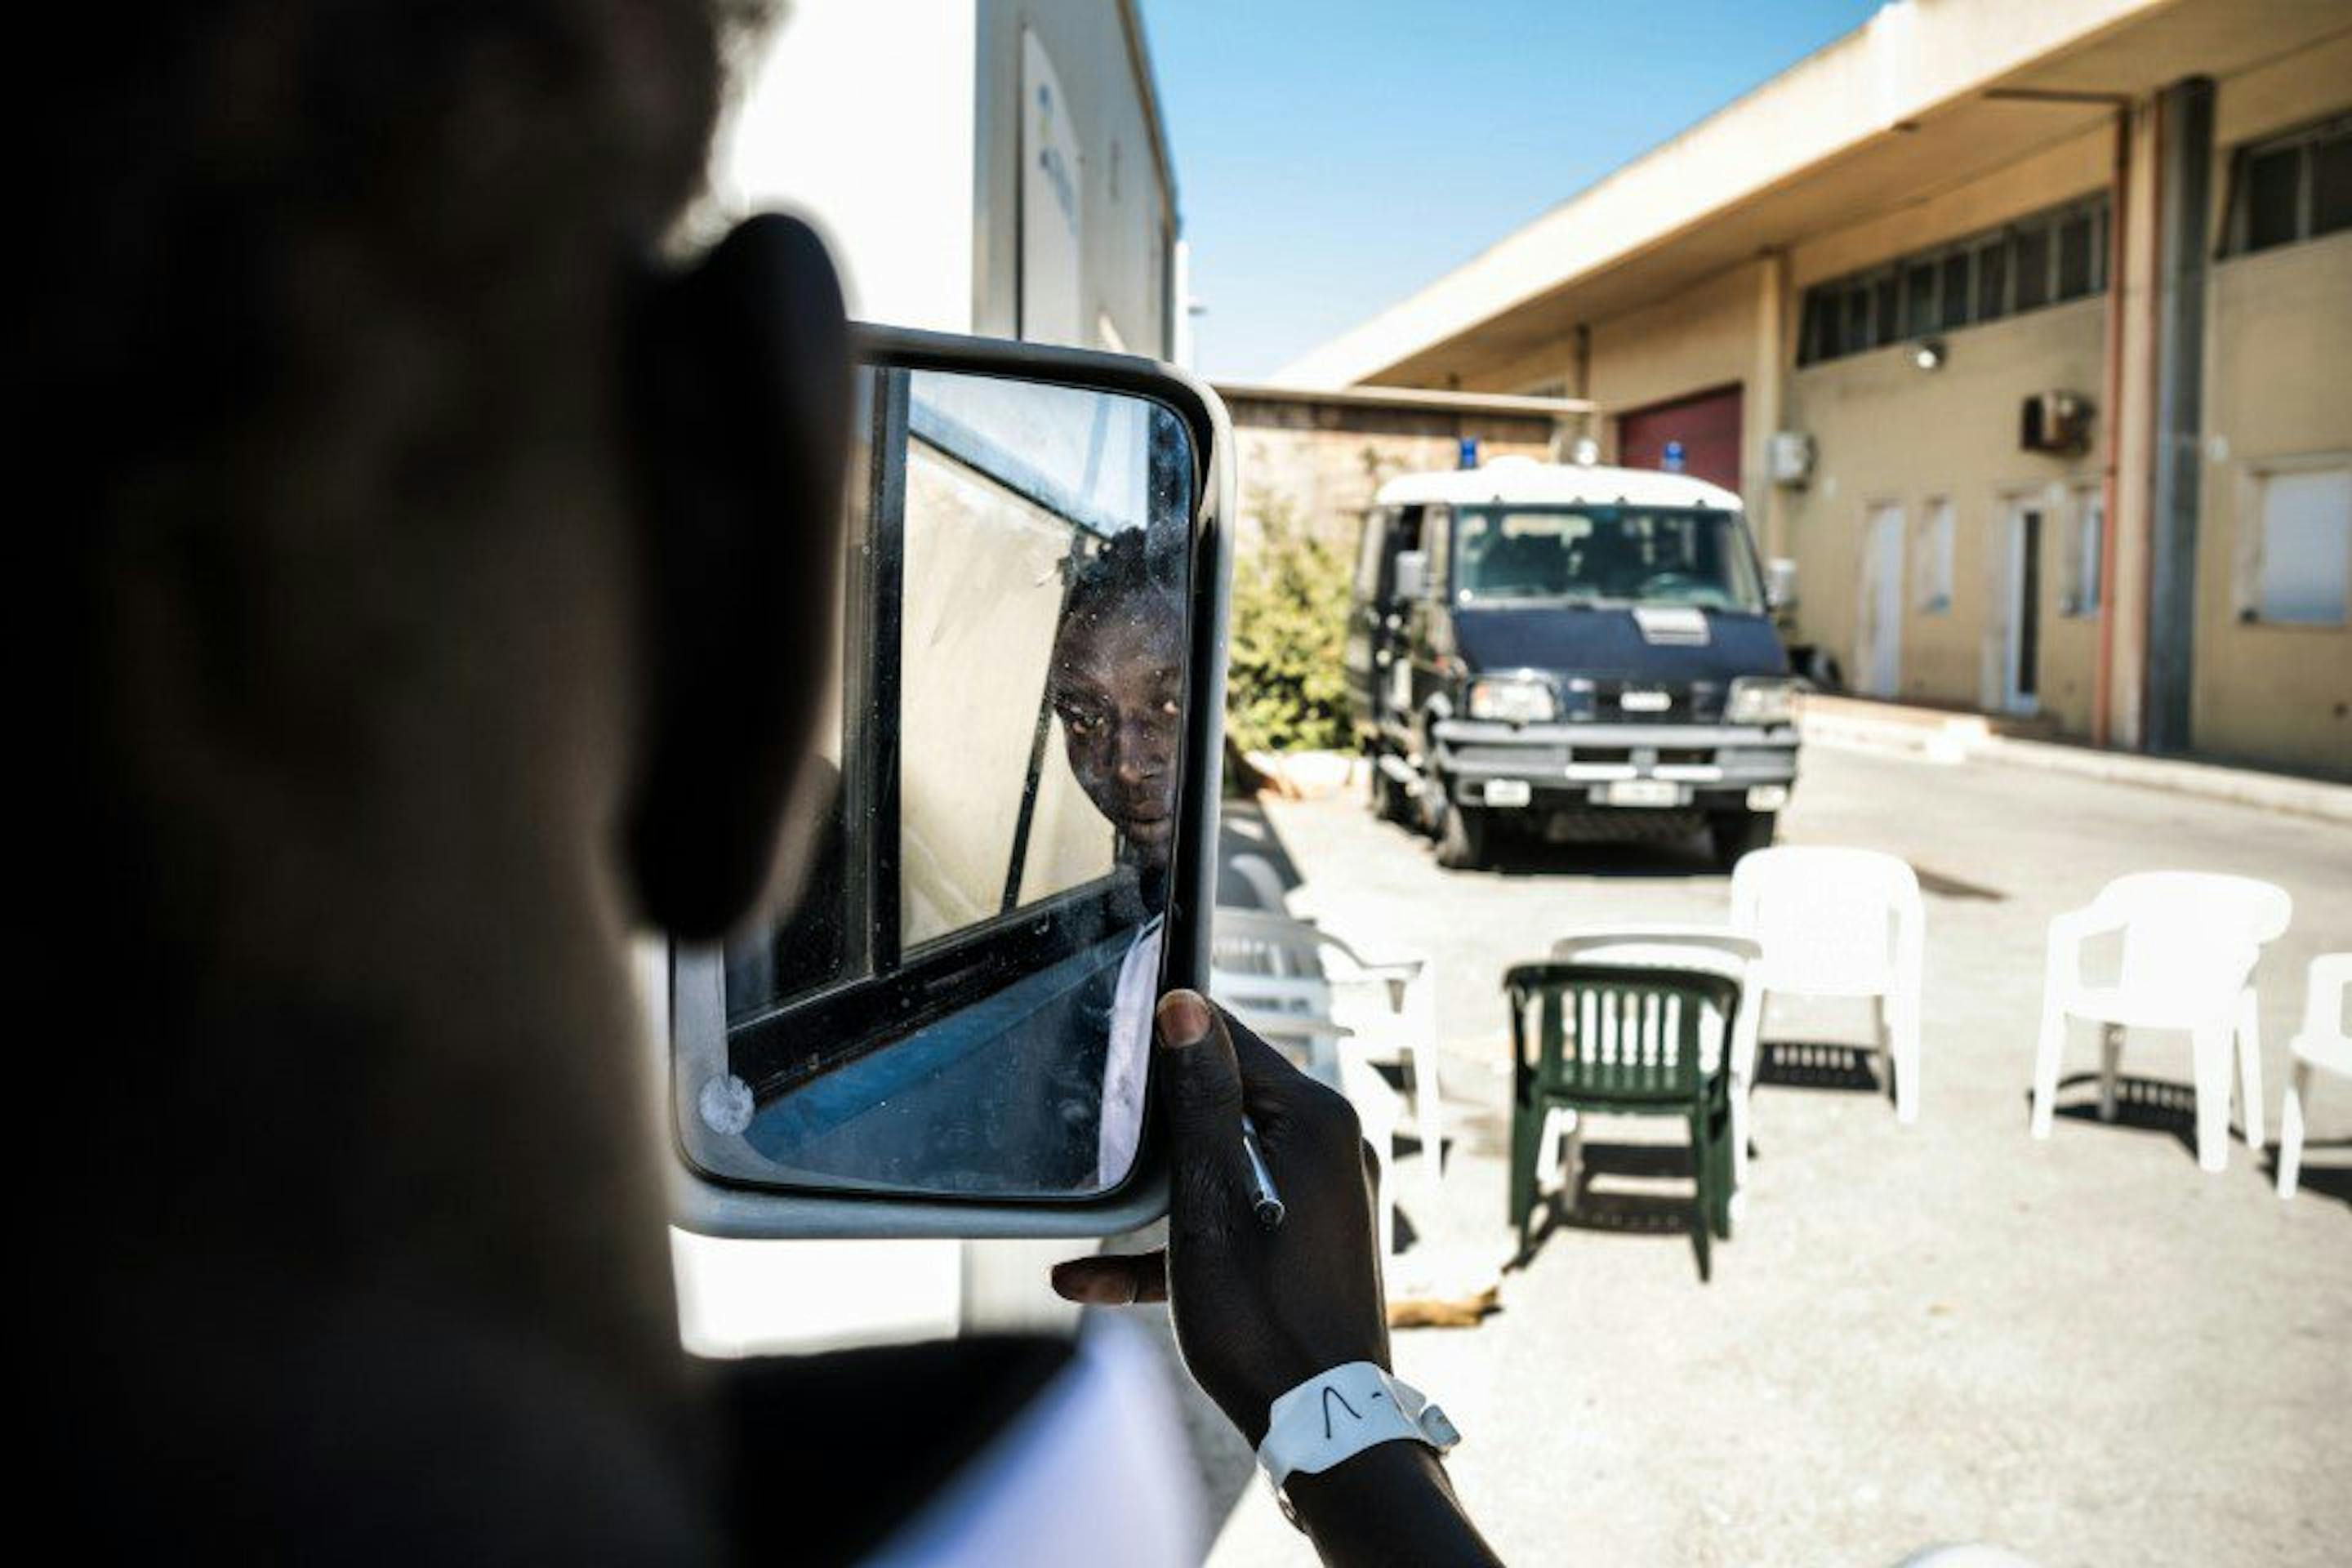 Giovane migrante si guarda allo speccio in macchina, sullo sfondo il furgone della Polizia